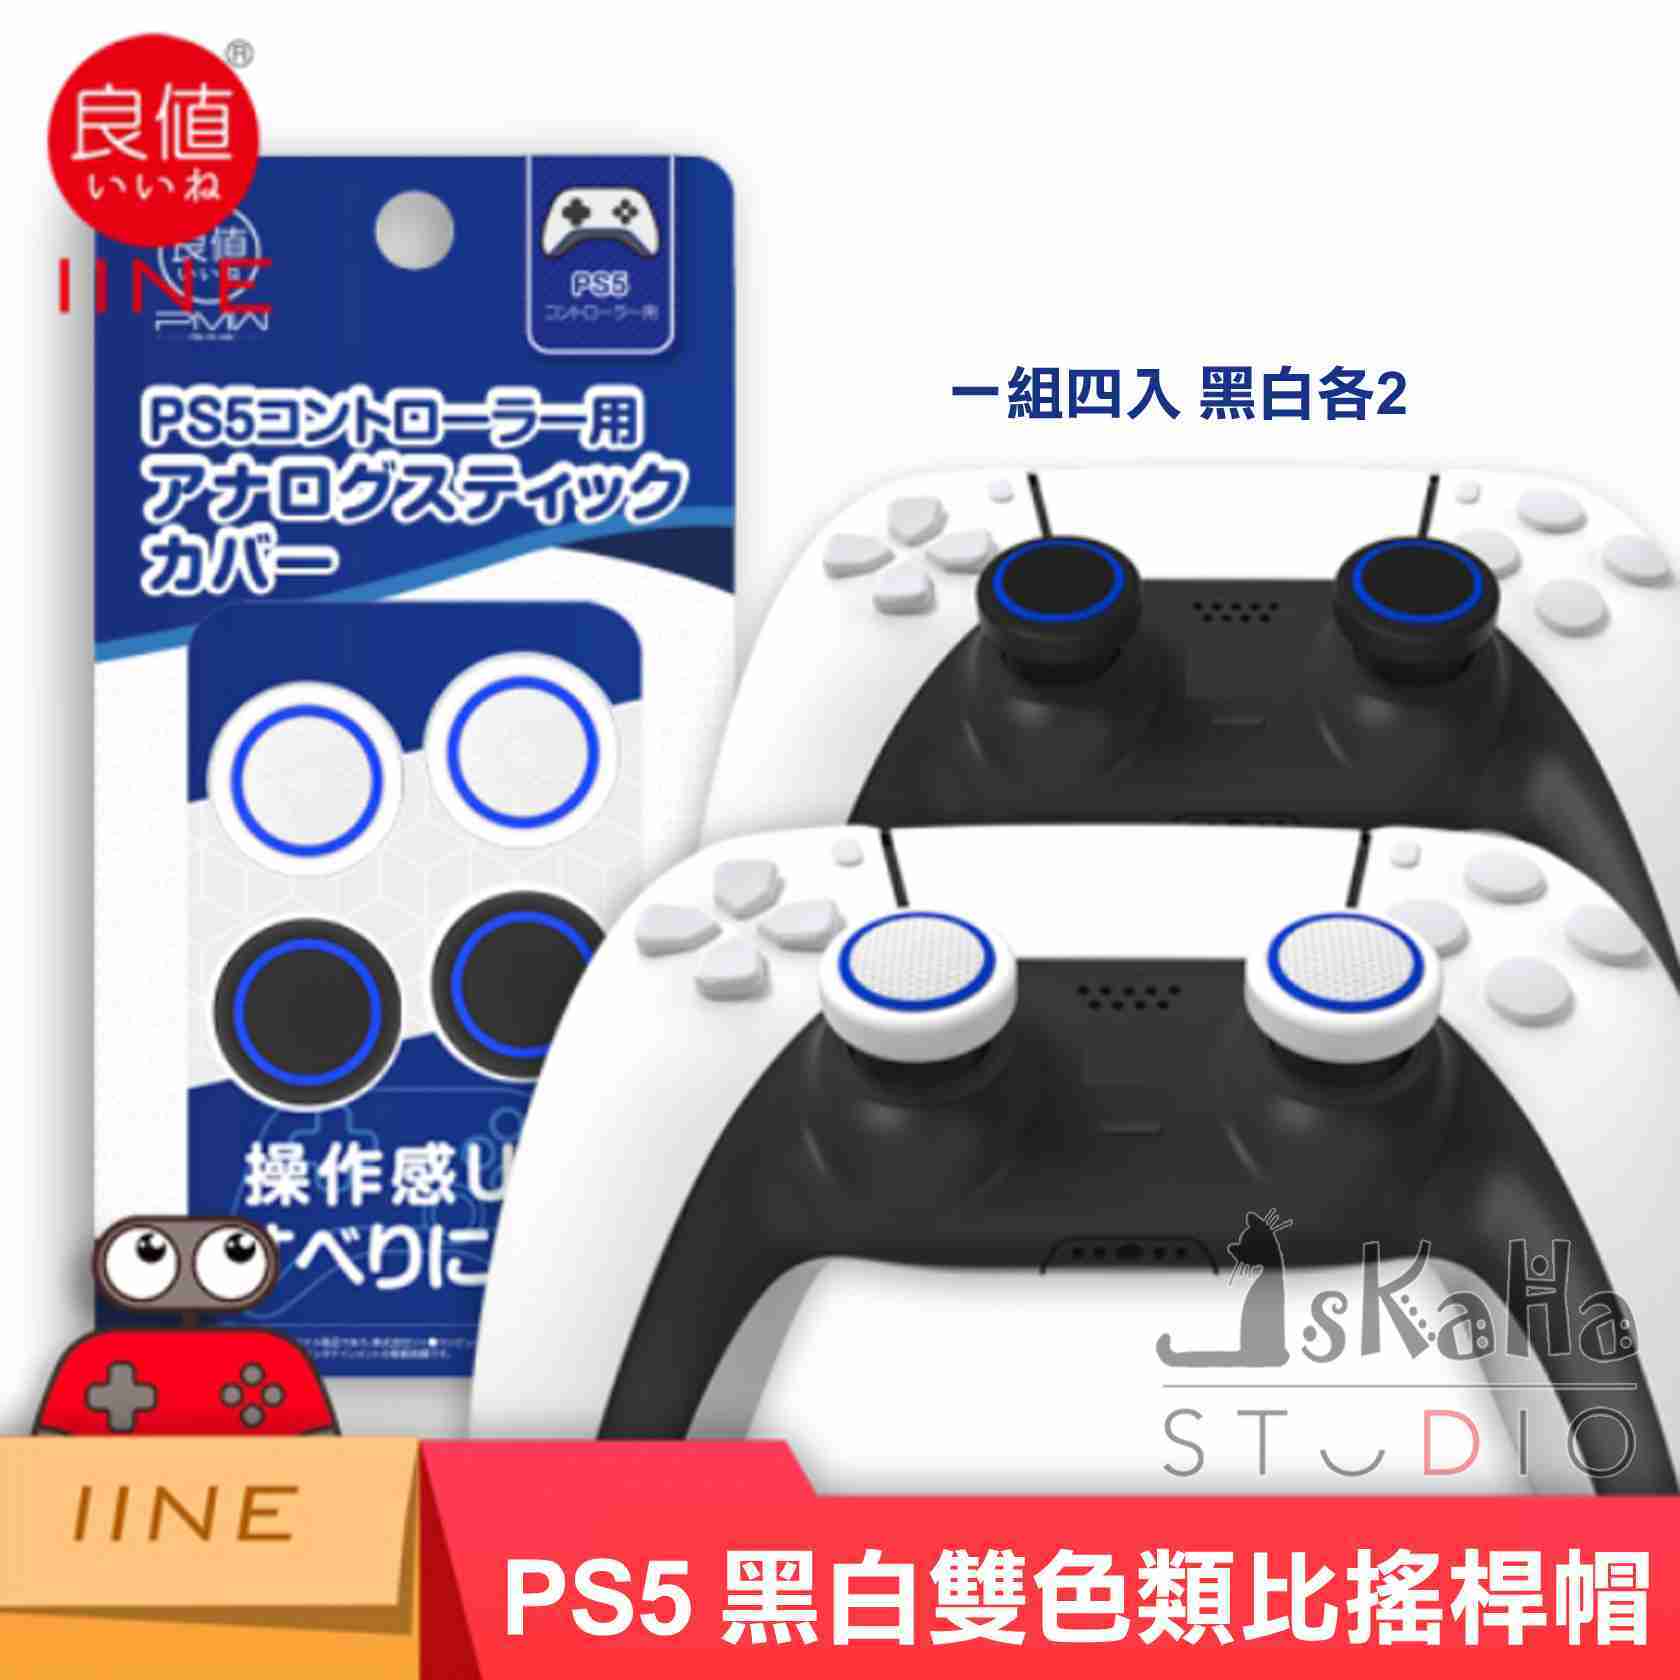 現貨 PS5 類比搖桿套 良值 黑白色 藍粉色 黑藍色 PS4/Xbox/NS Pro搖桿適用 矽膠搖桿帽 類比套